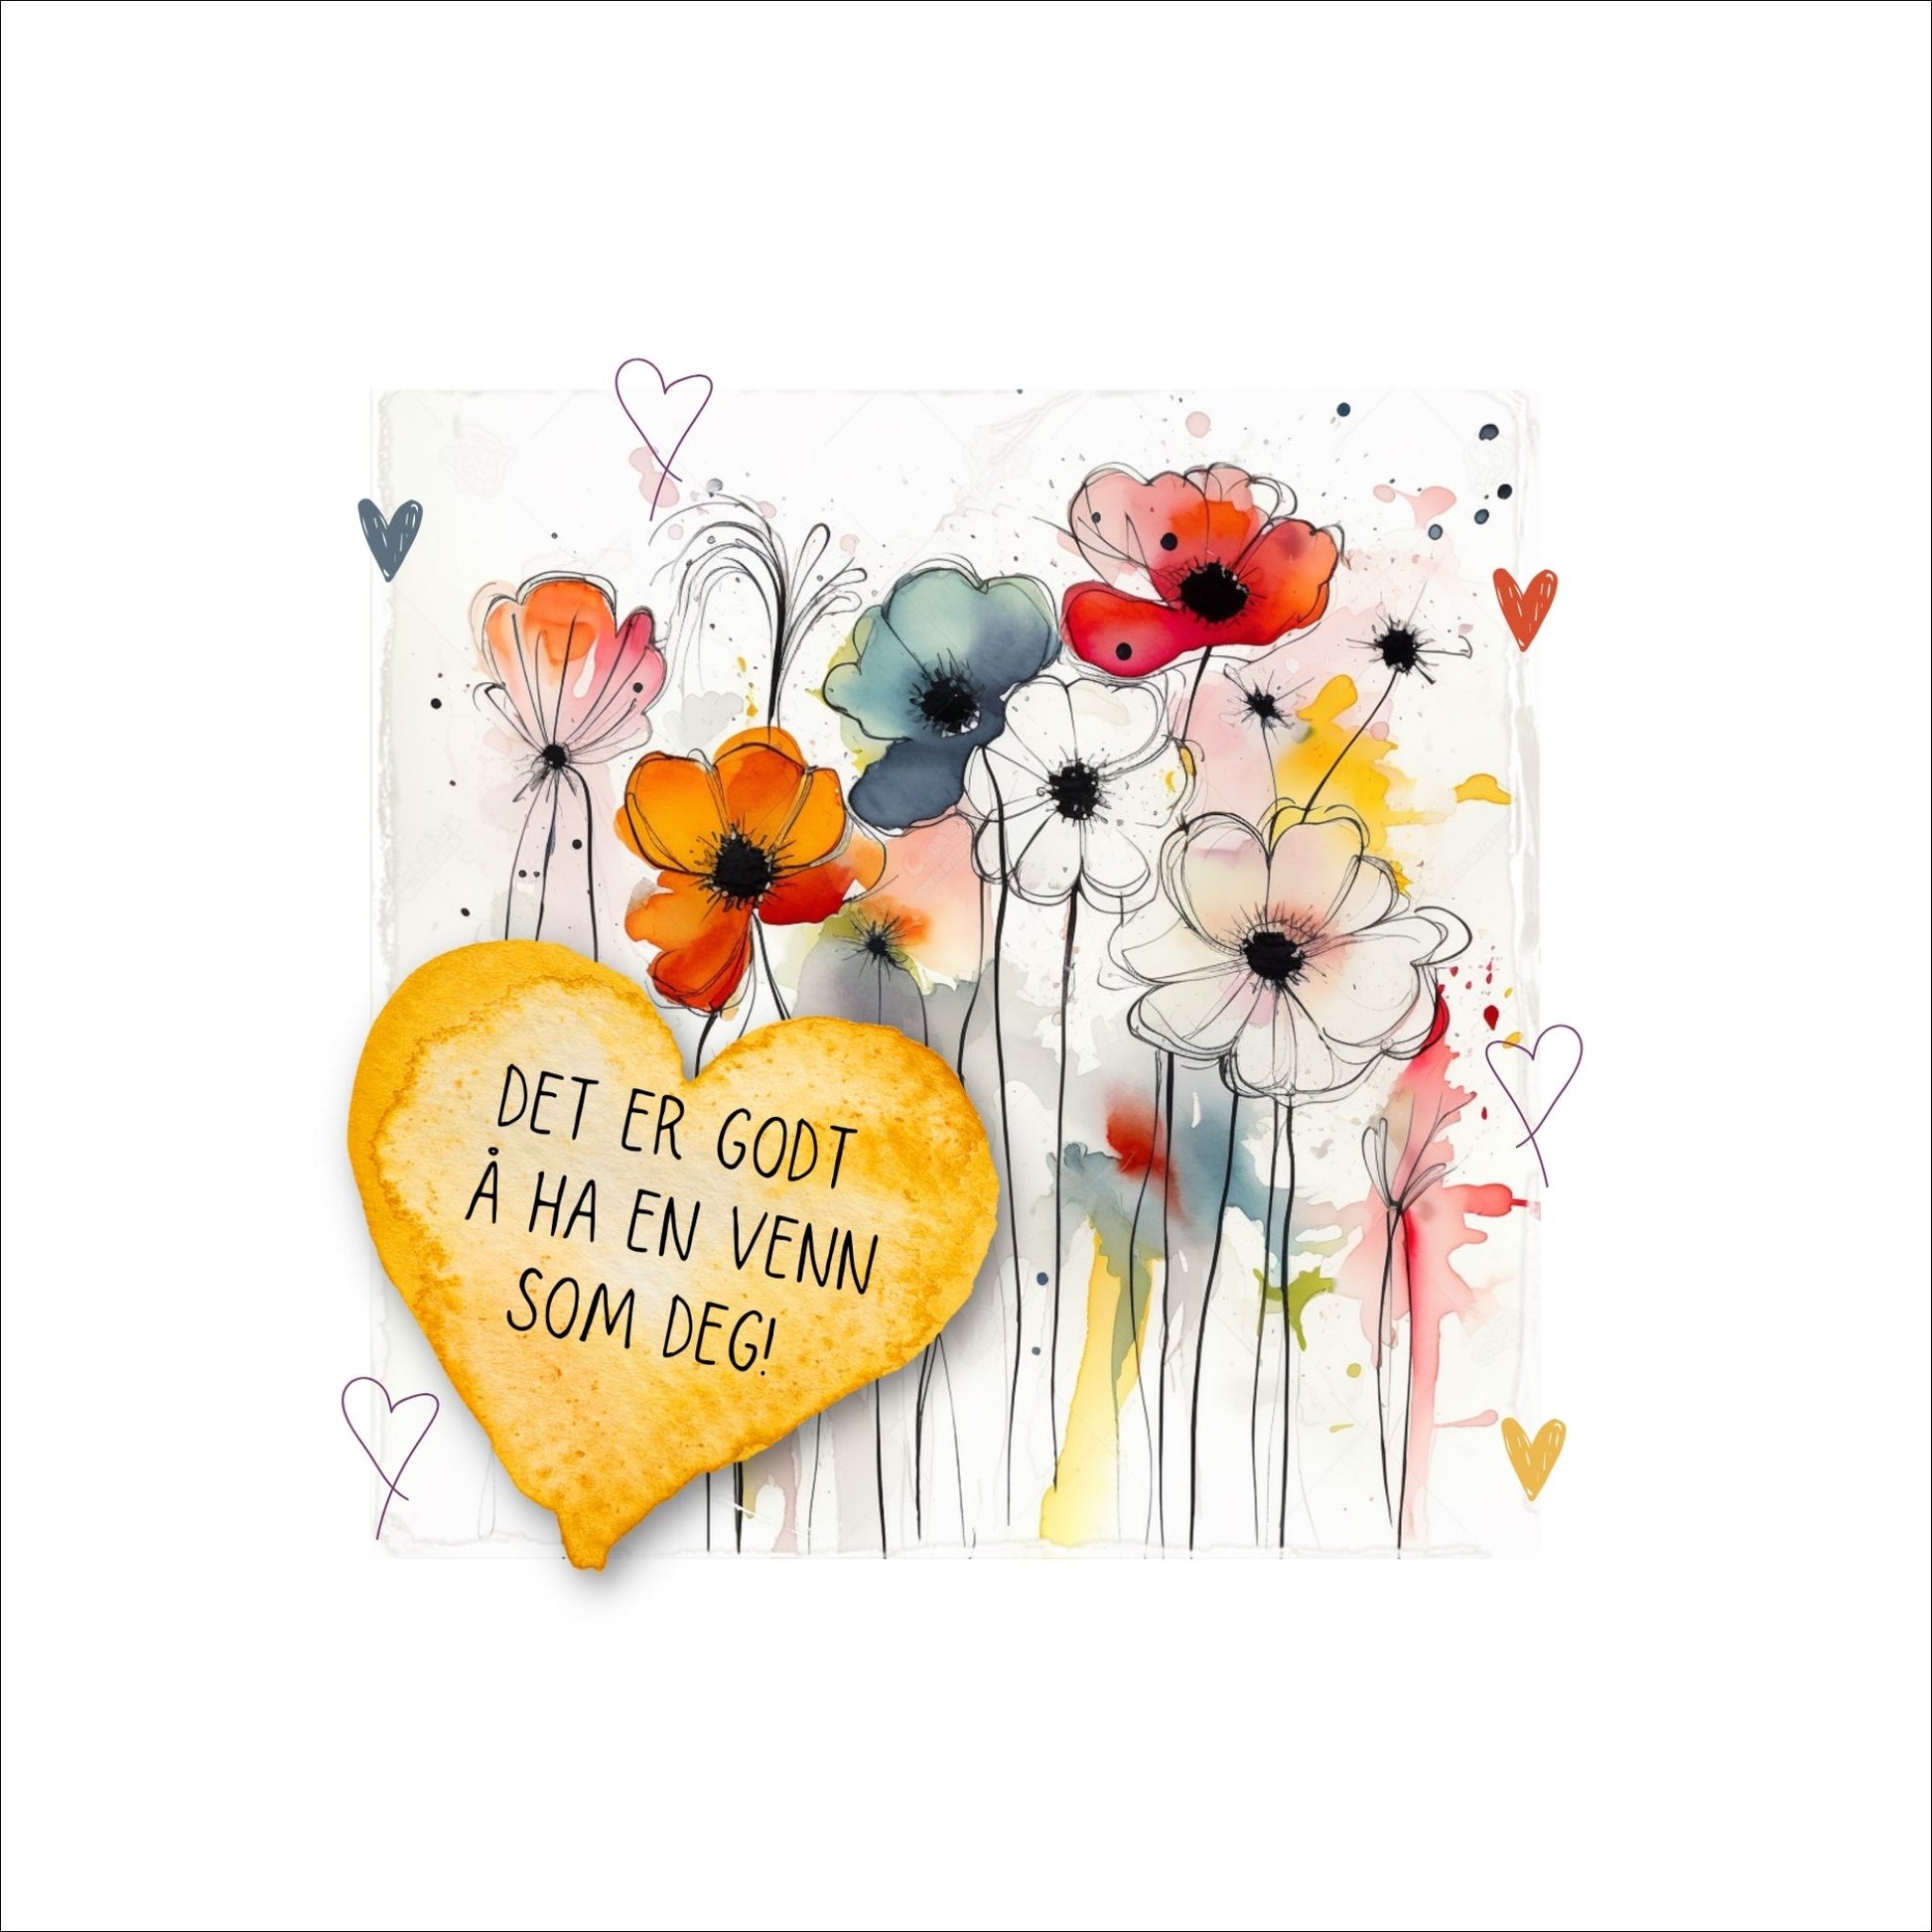 Plakat med lysegult hjerte og tekst "Det er godt å ha en venn som deg" - og et motiv med blomster i gul, rød, hvit, blå og oransje. Med hvit kant på 4 cm. 